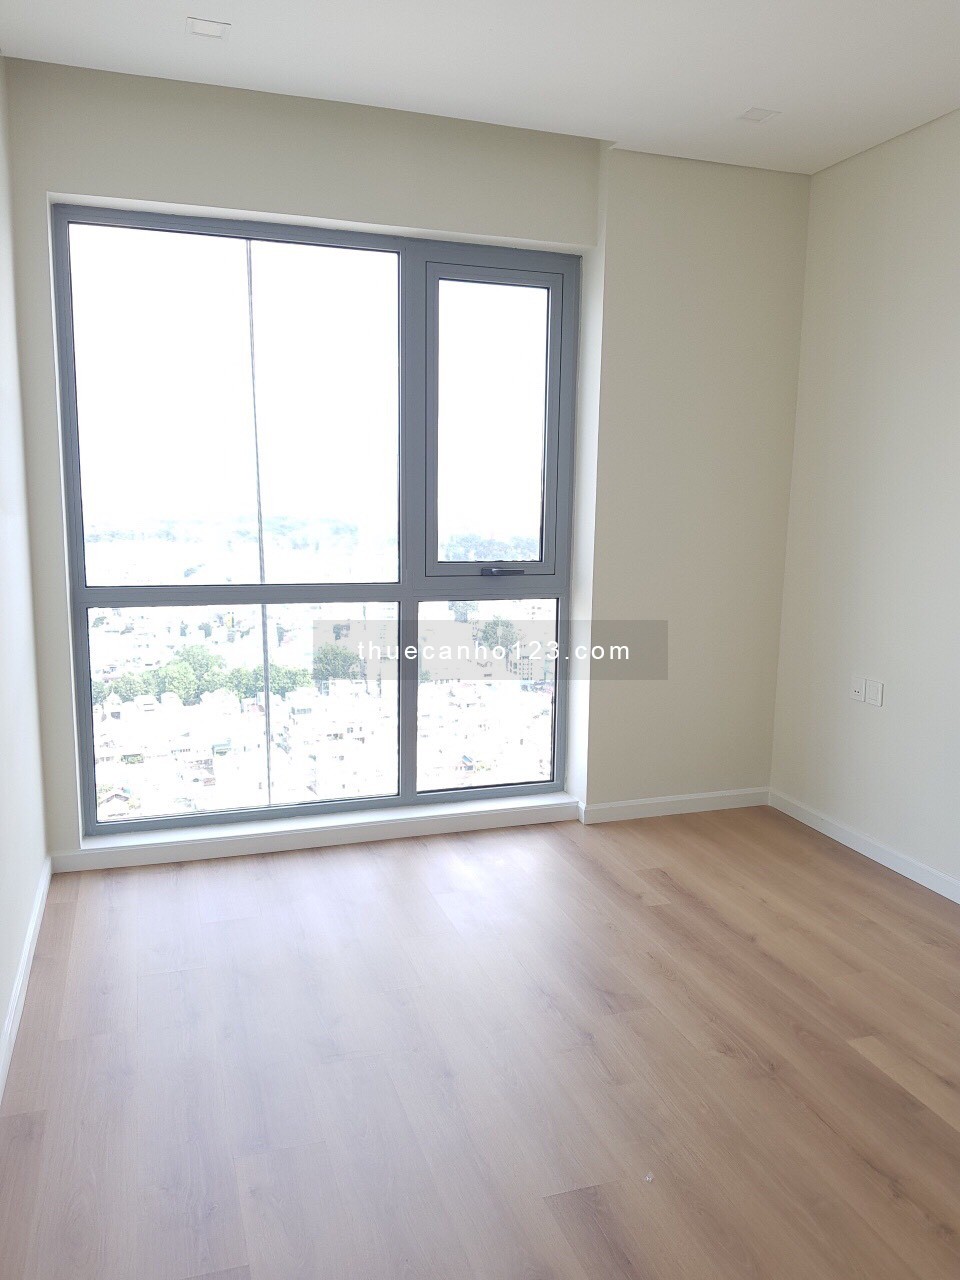 Cho thuê căn hộ Rivera Park SG, Quận 10, 78m2, căn góc đẹp, giá 17tr, LH: 0933722272 Kiểm